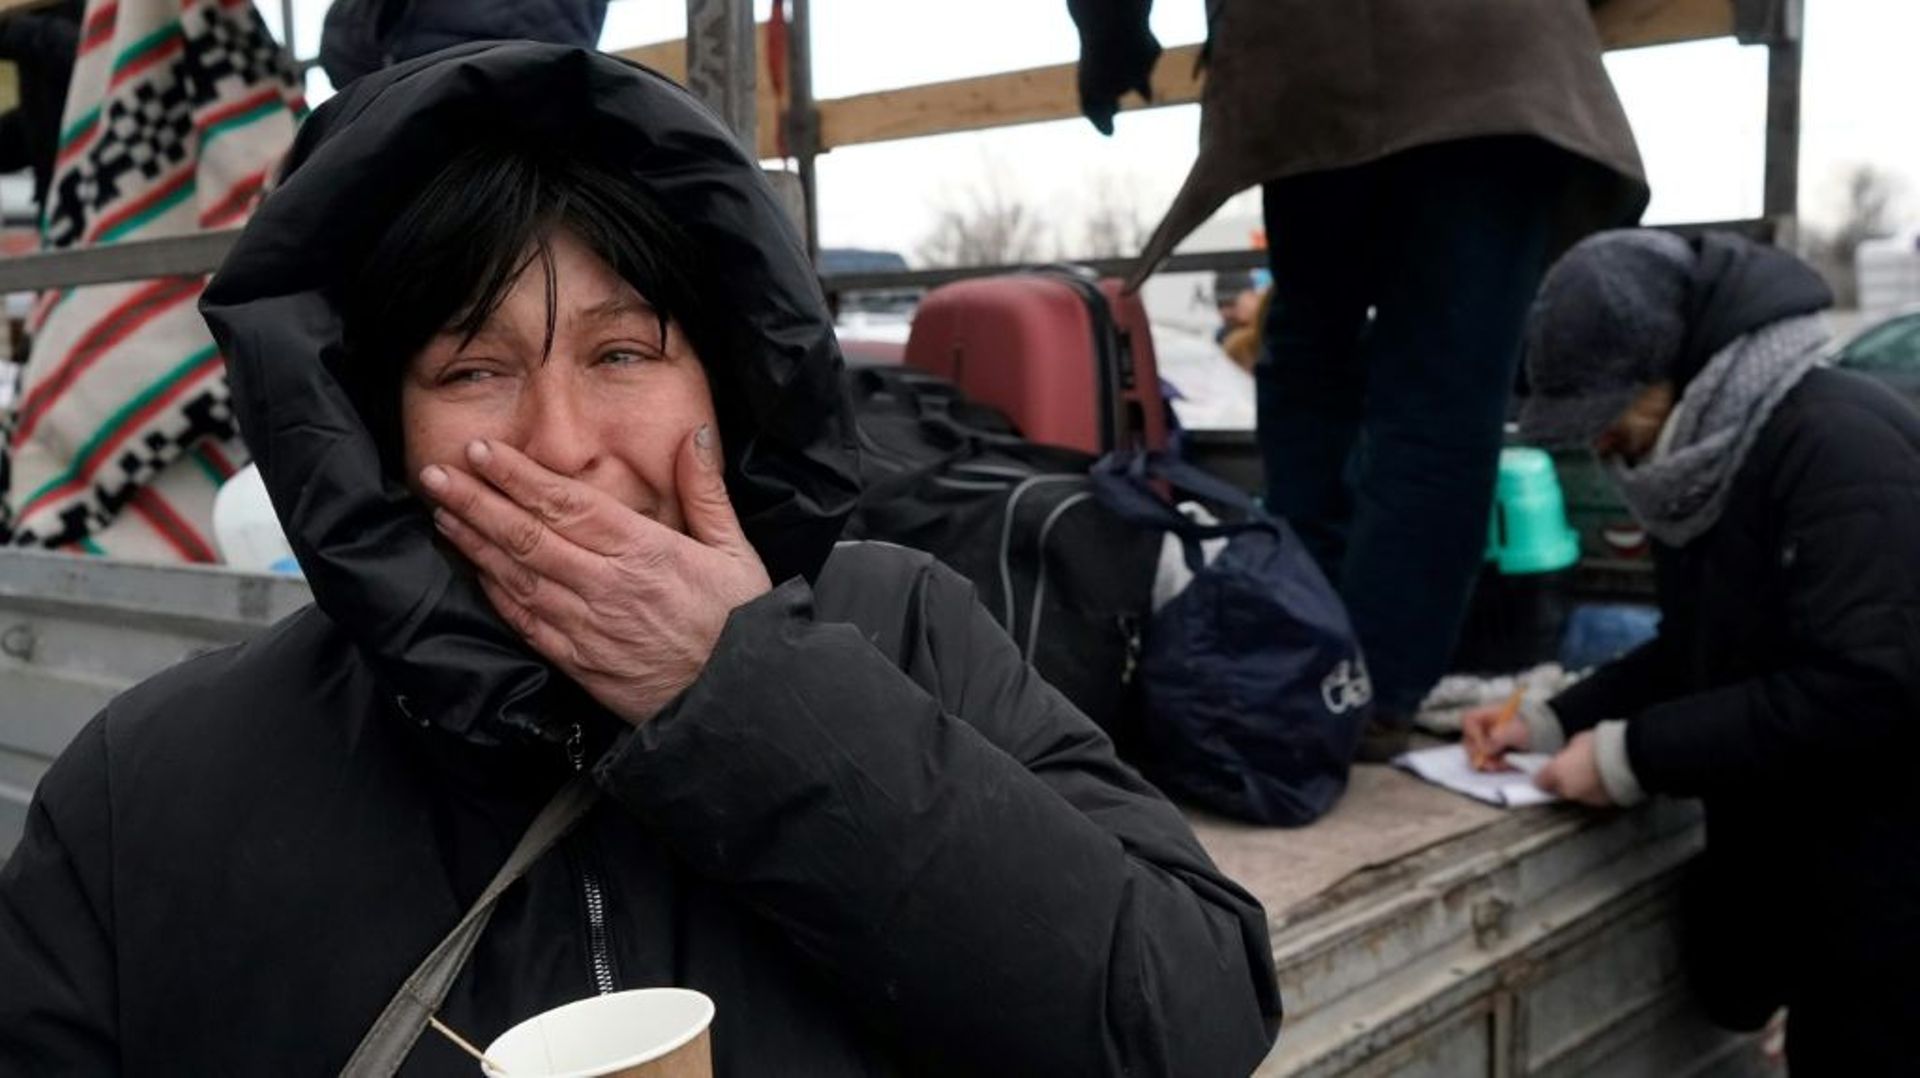 Des personnes ayant fui l’offensive russe sur Marioupol sont accueillies dans une zone commerciale de Zaporojie, dans le centre de l’Ukraine, le 16 mars 2022.